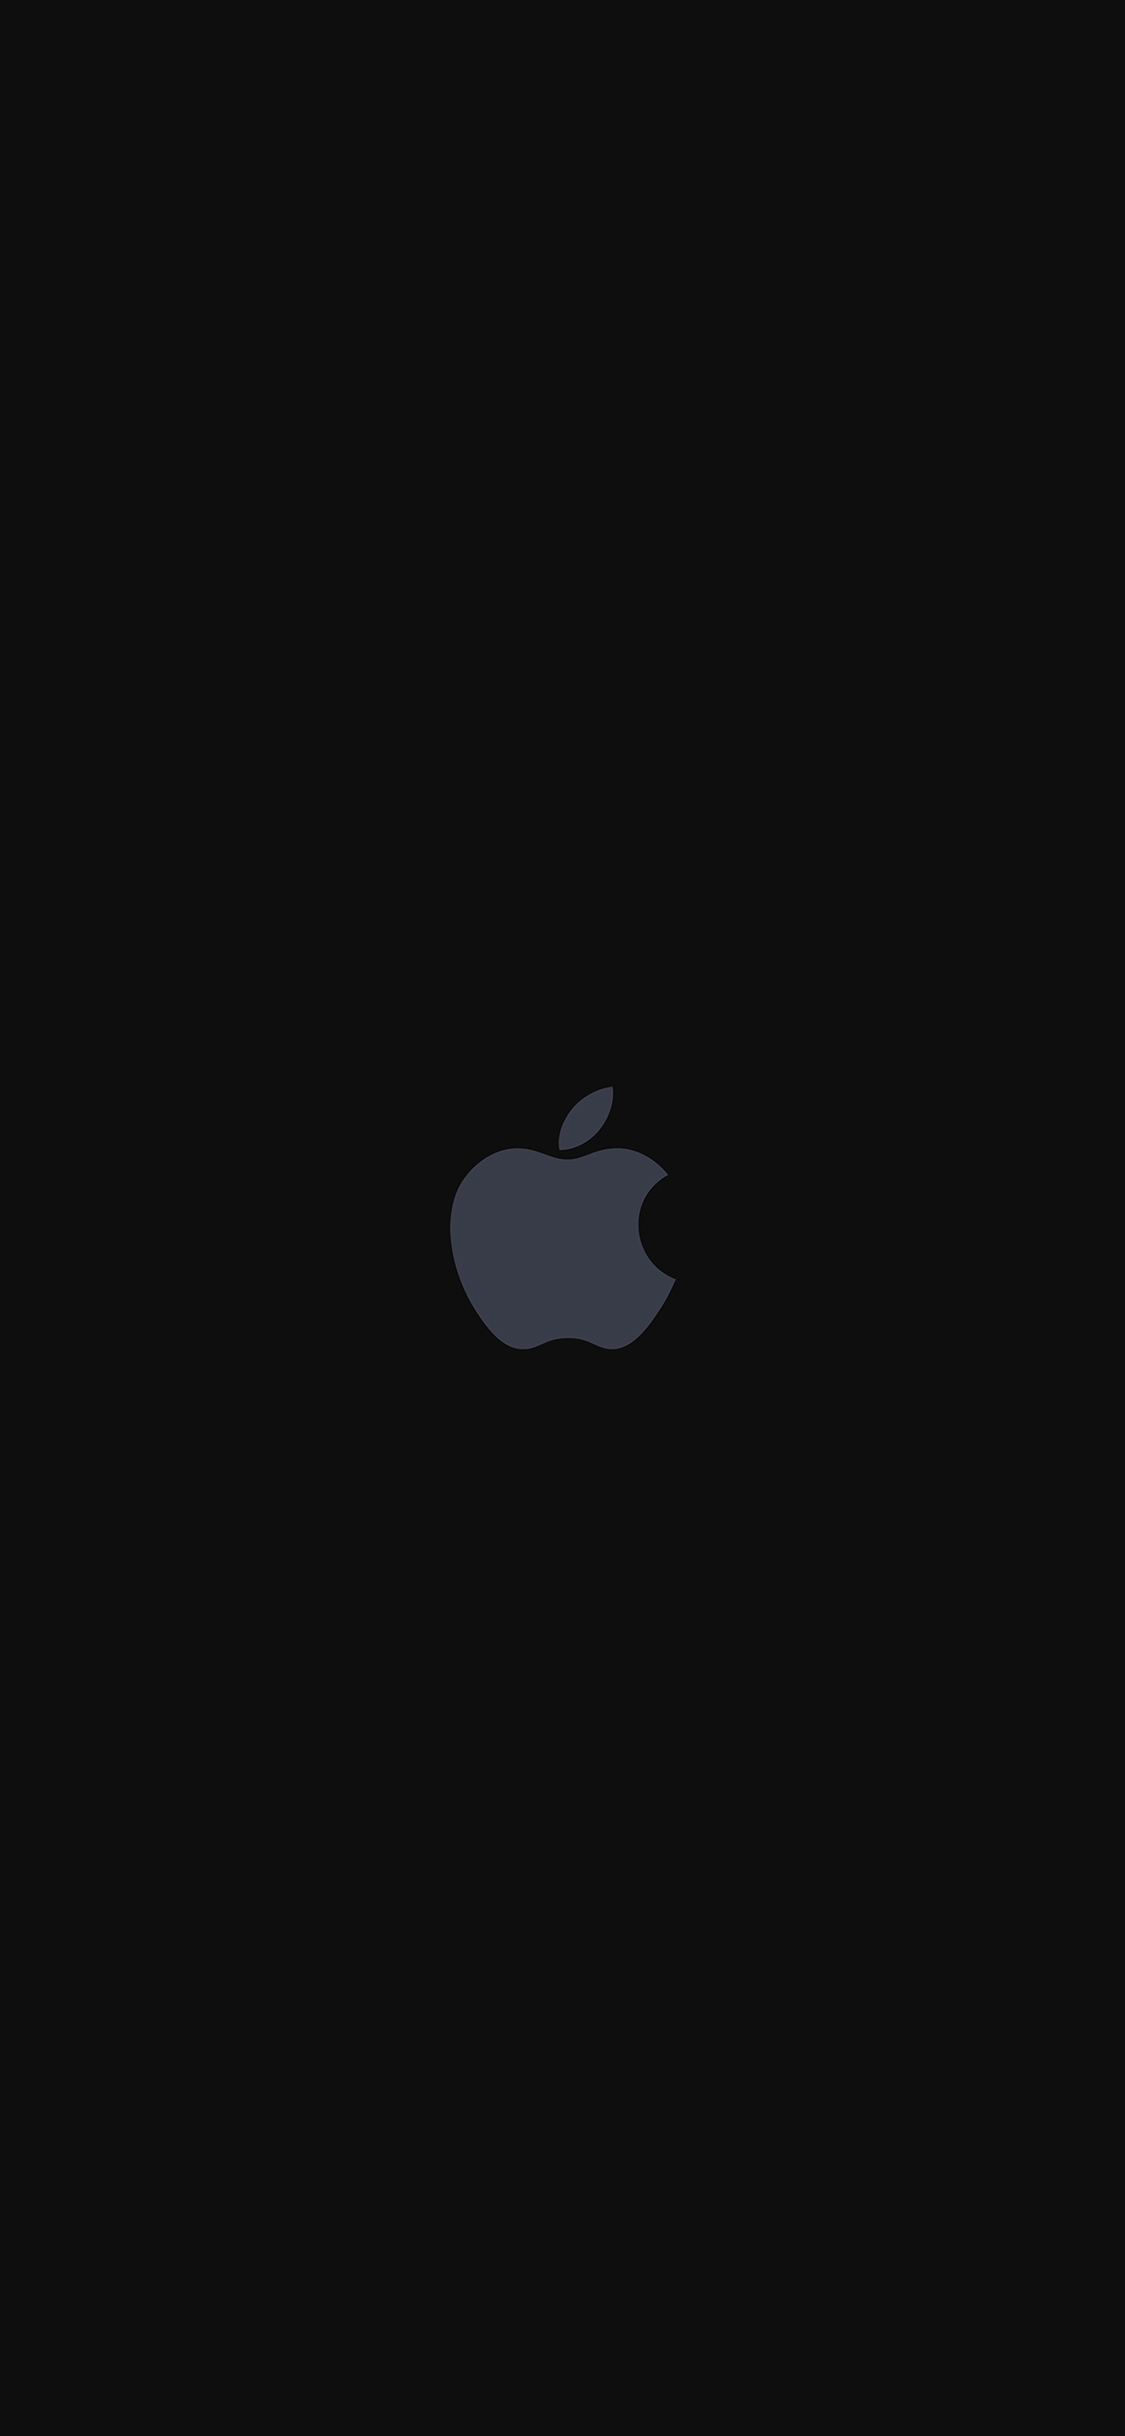 iphone logo wallpaper,negro,blanco,cielo,oscuridad,texto